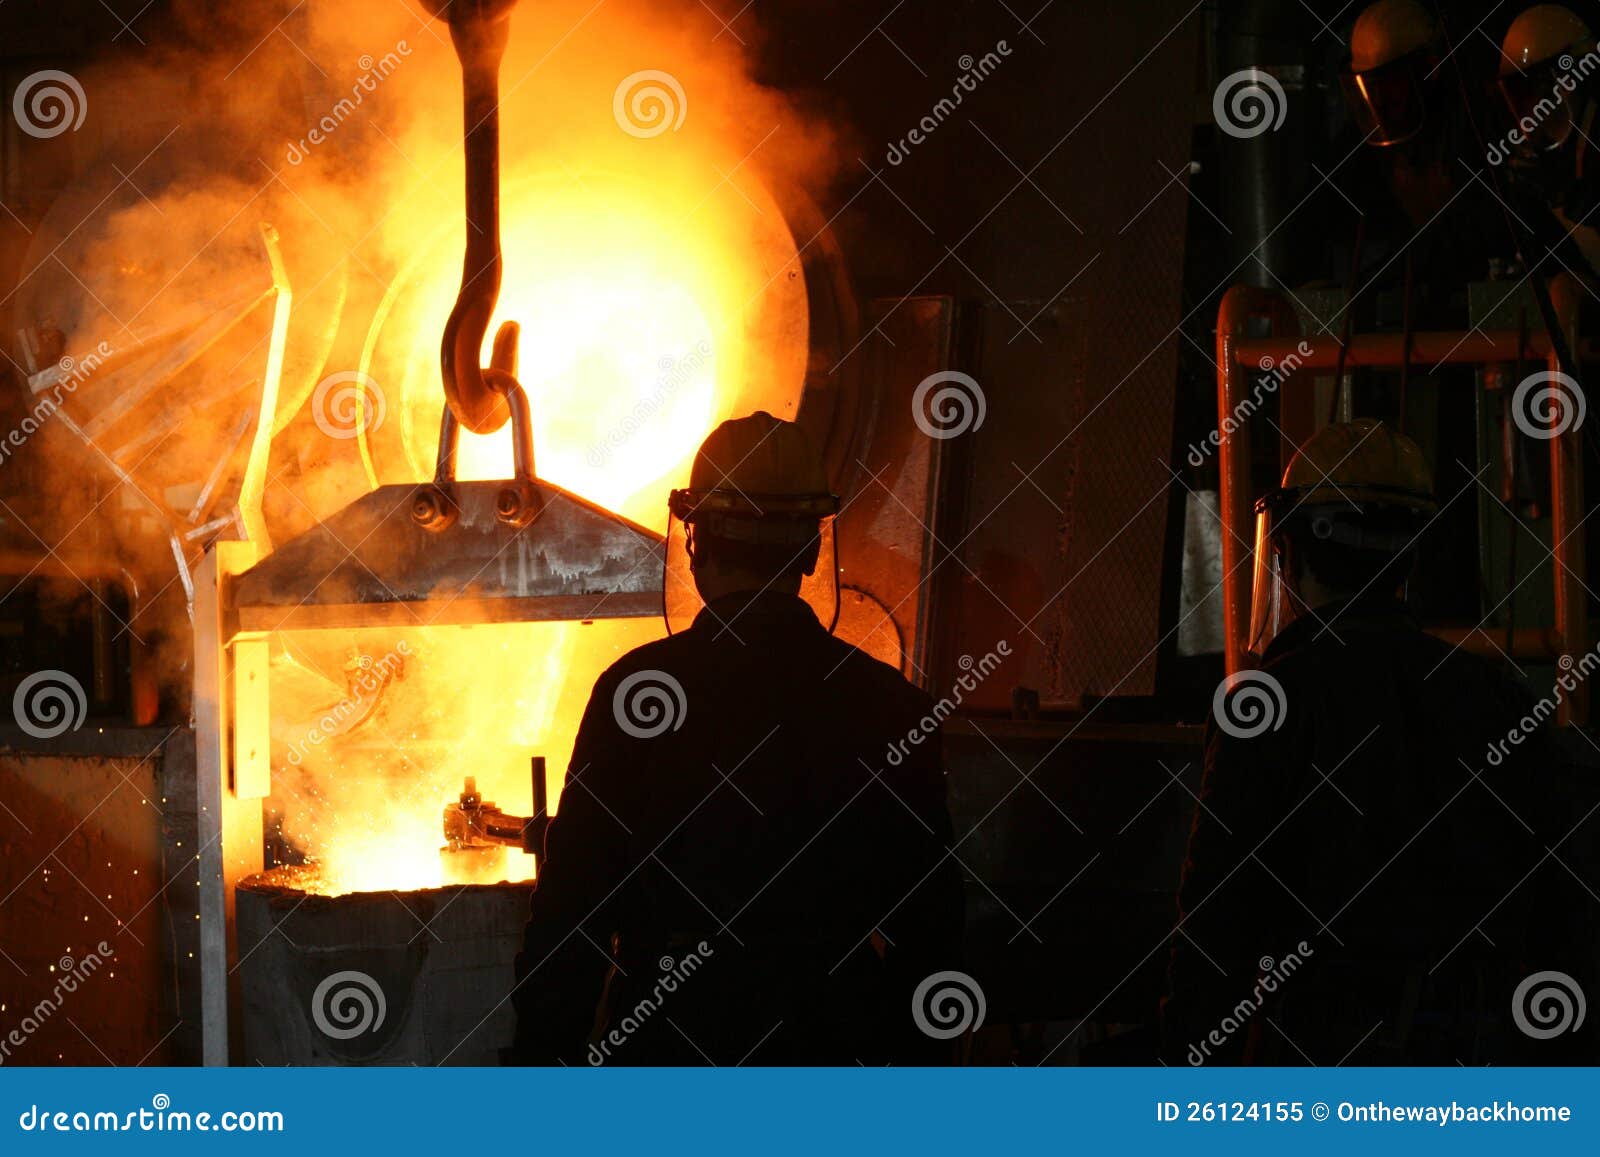 steel industry molten metal